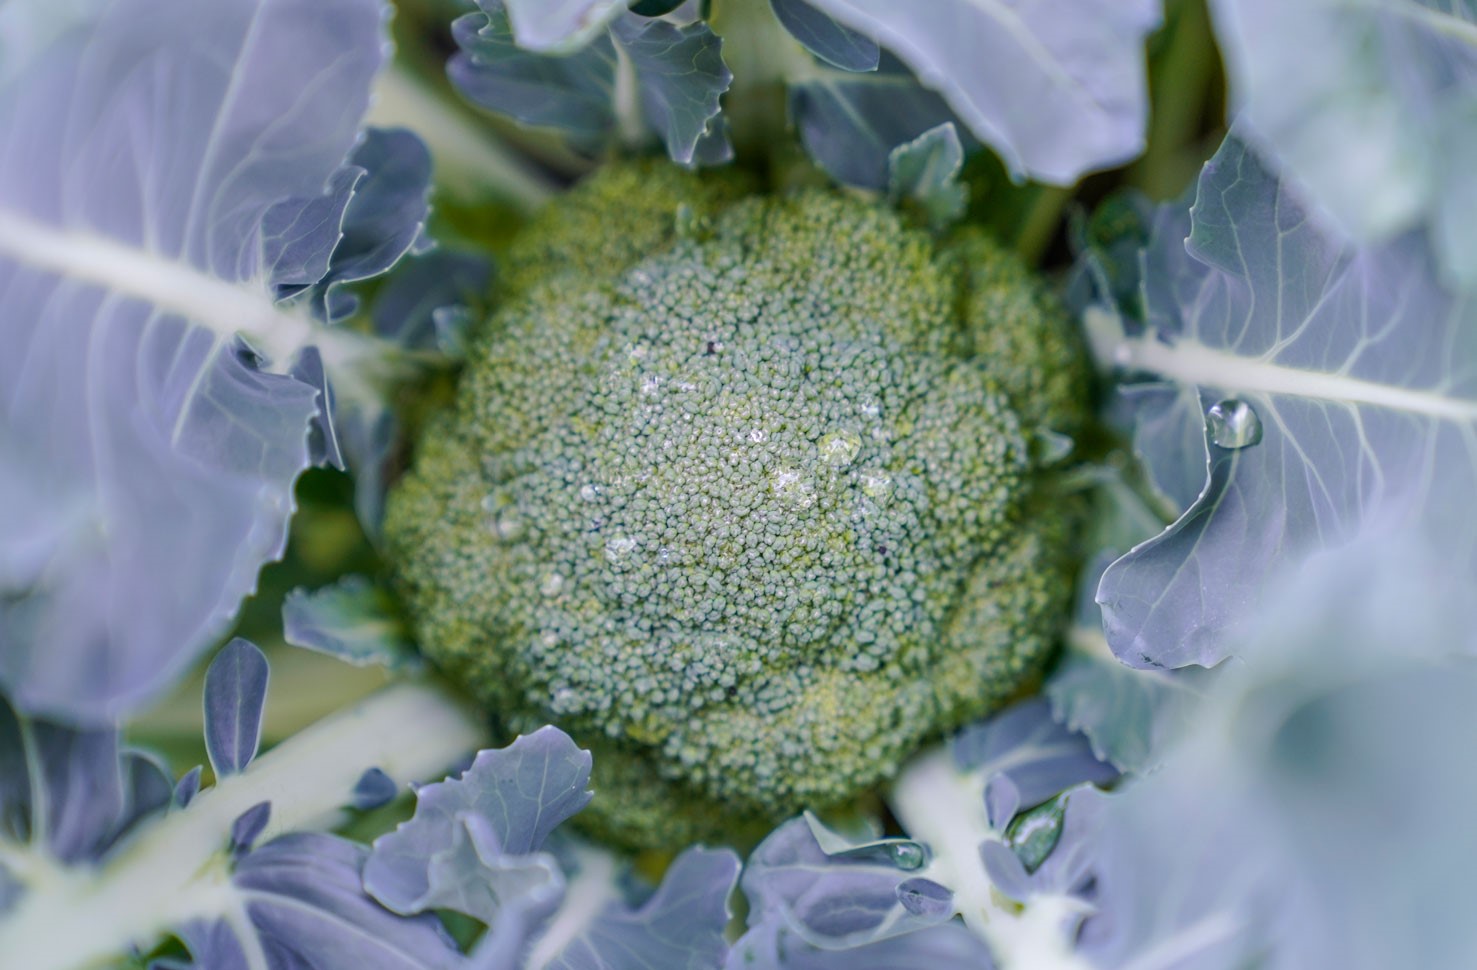 Broccoli växer på stjälk med skyddande ytterblad